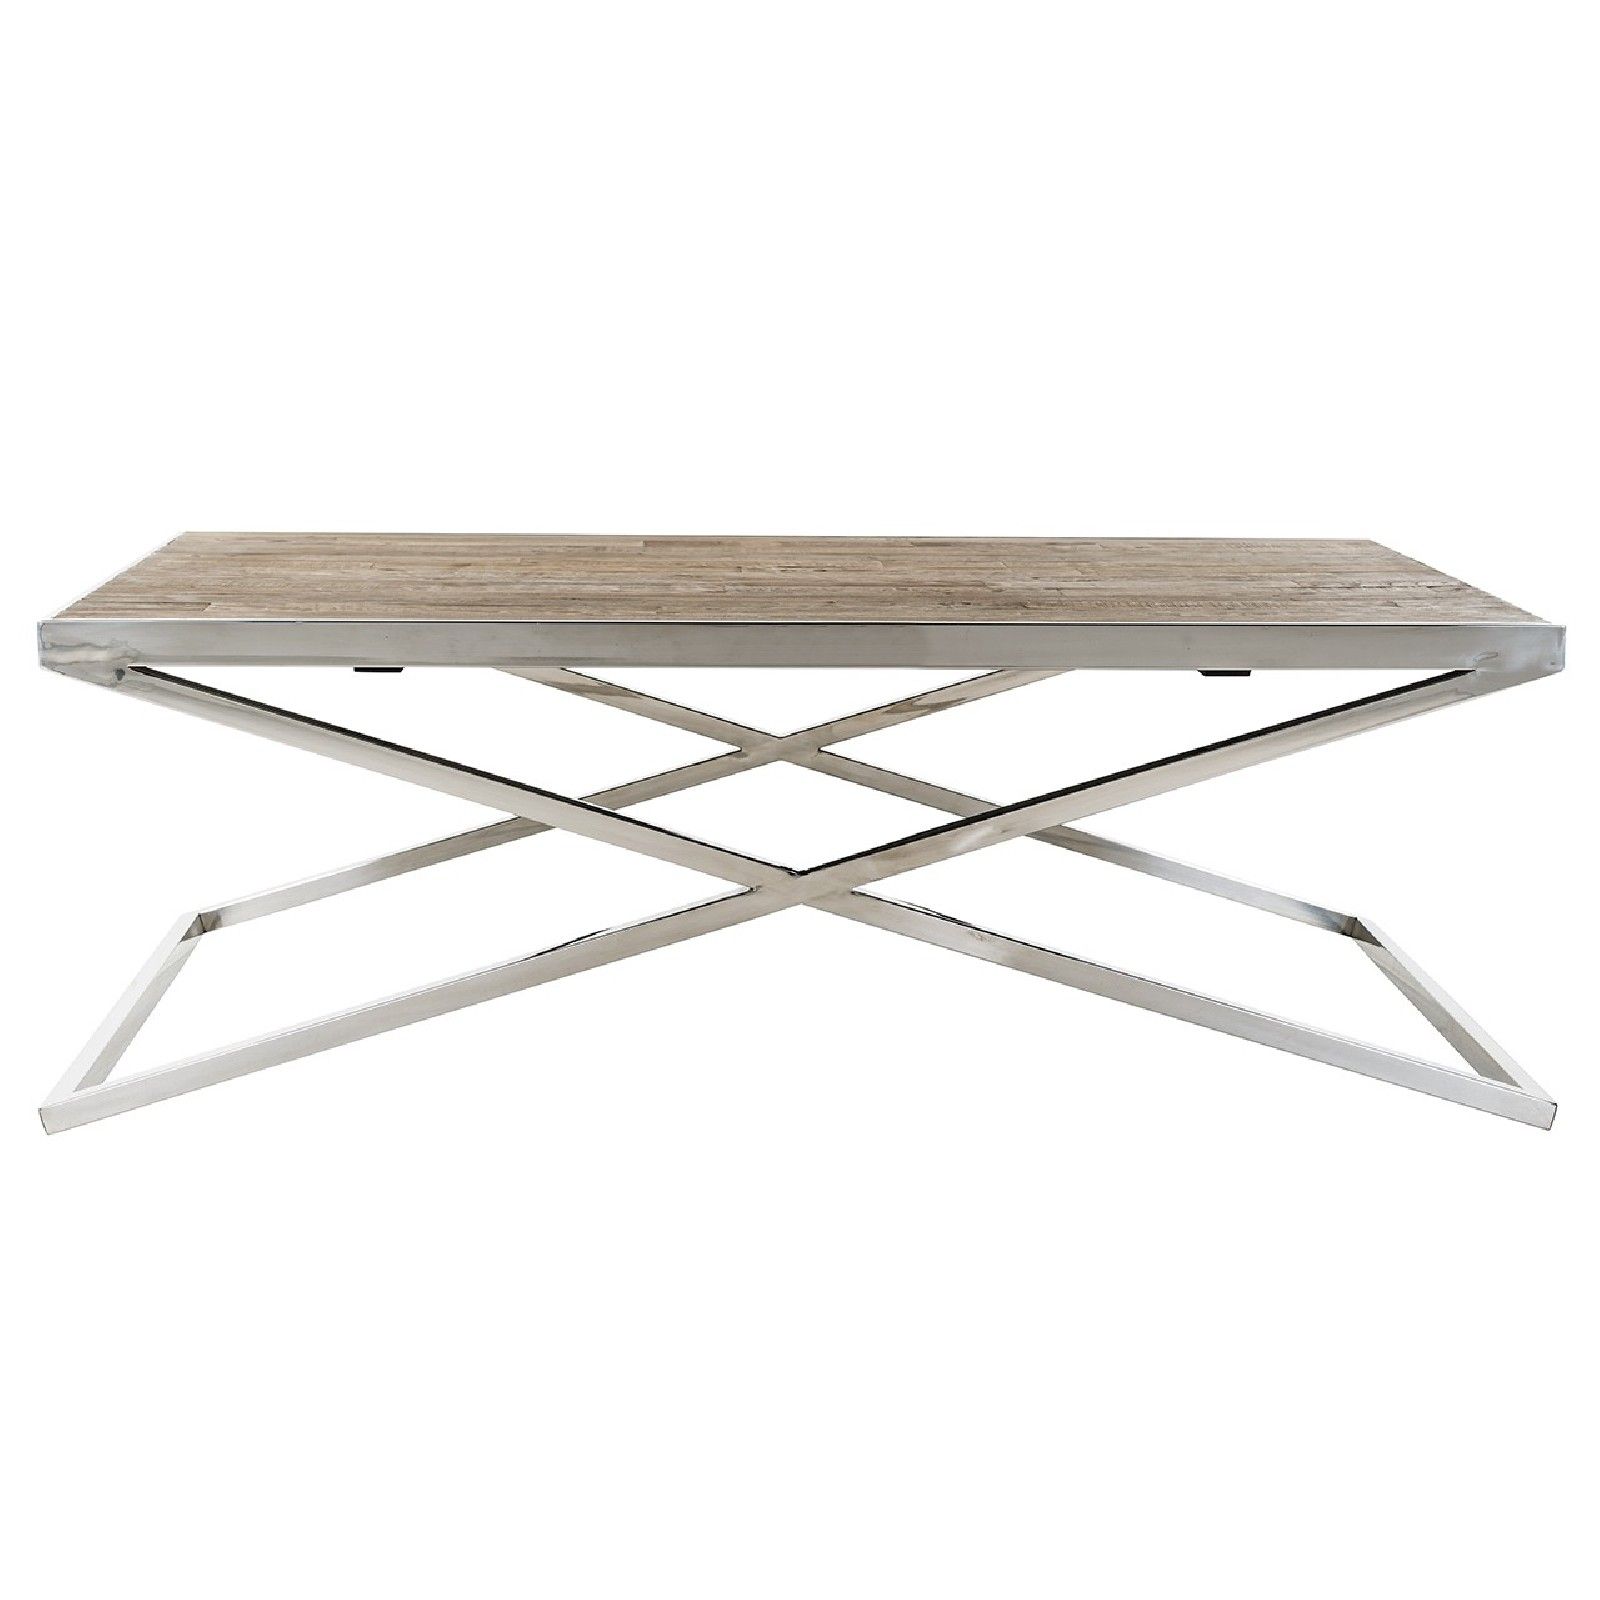 Table basse rectangulaire 130x80 - Inox et bois recyclé 